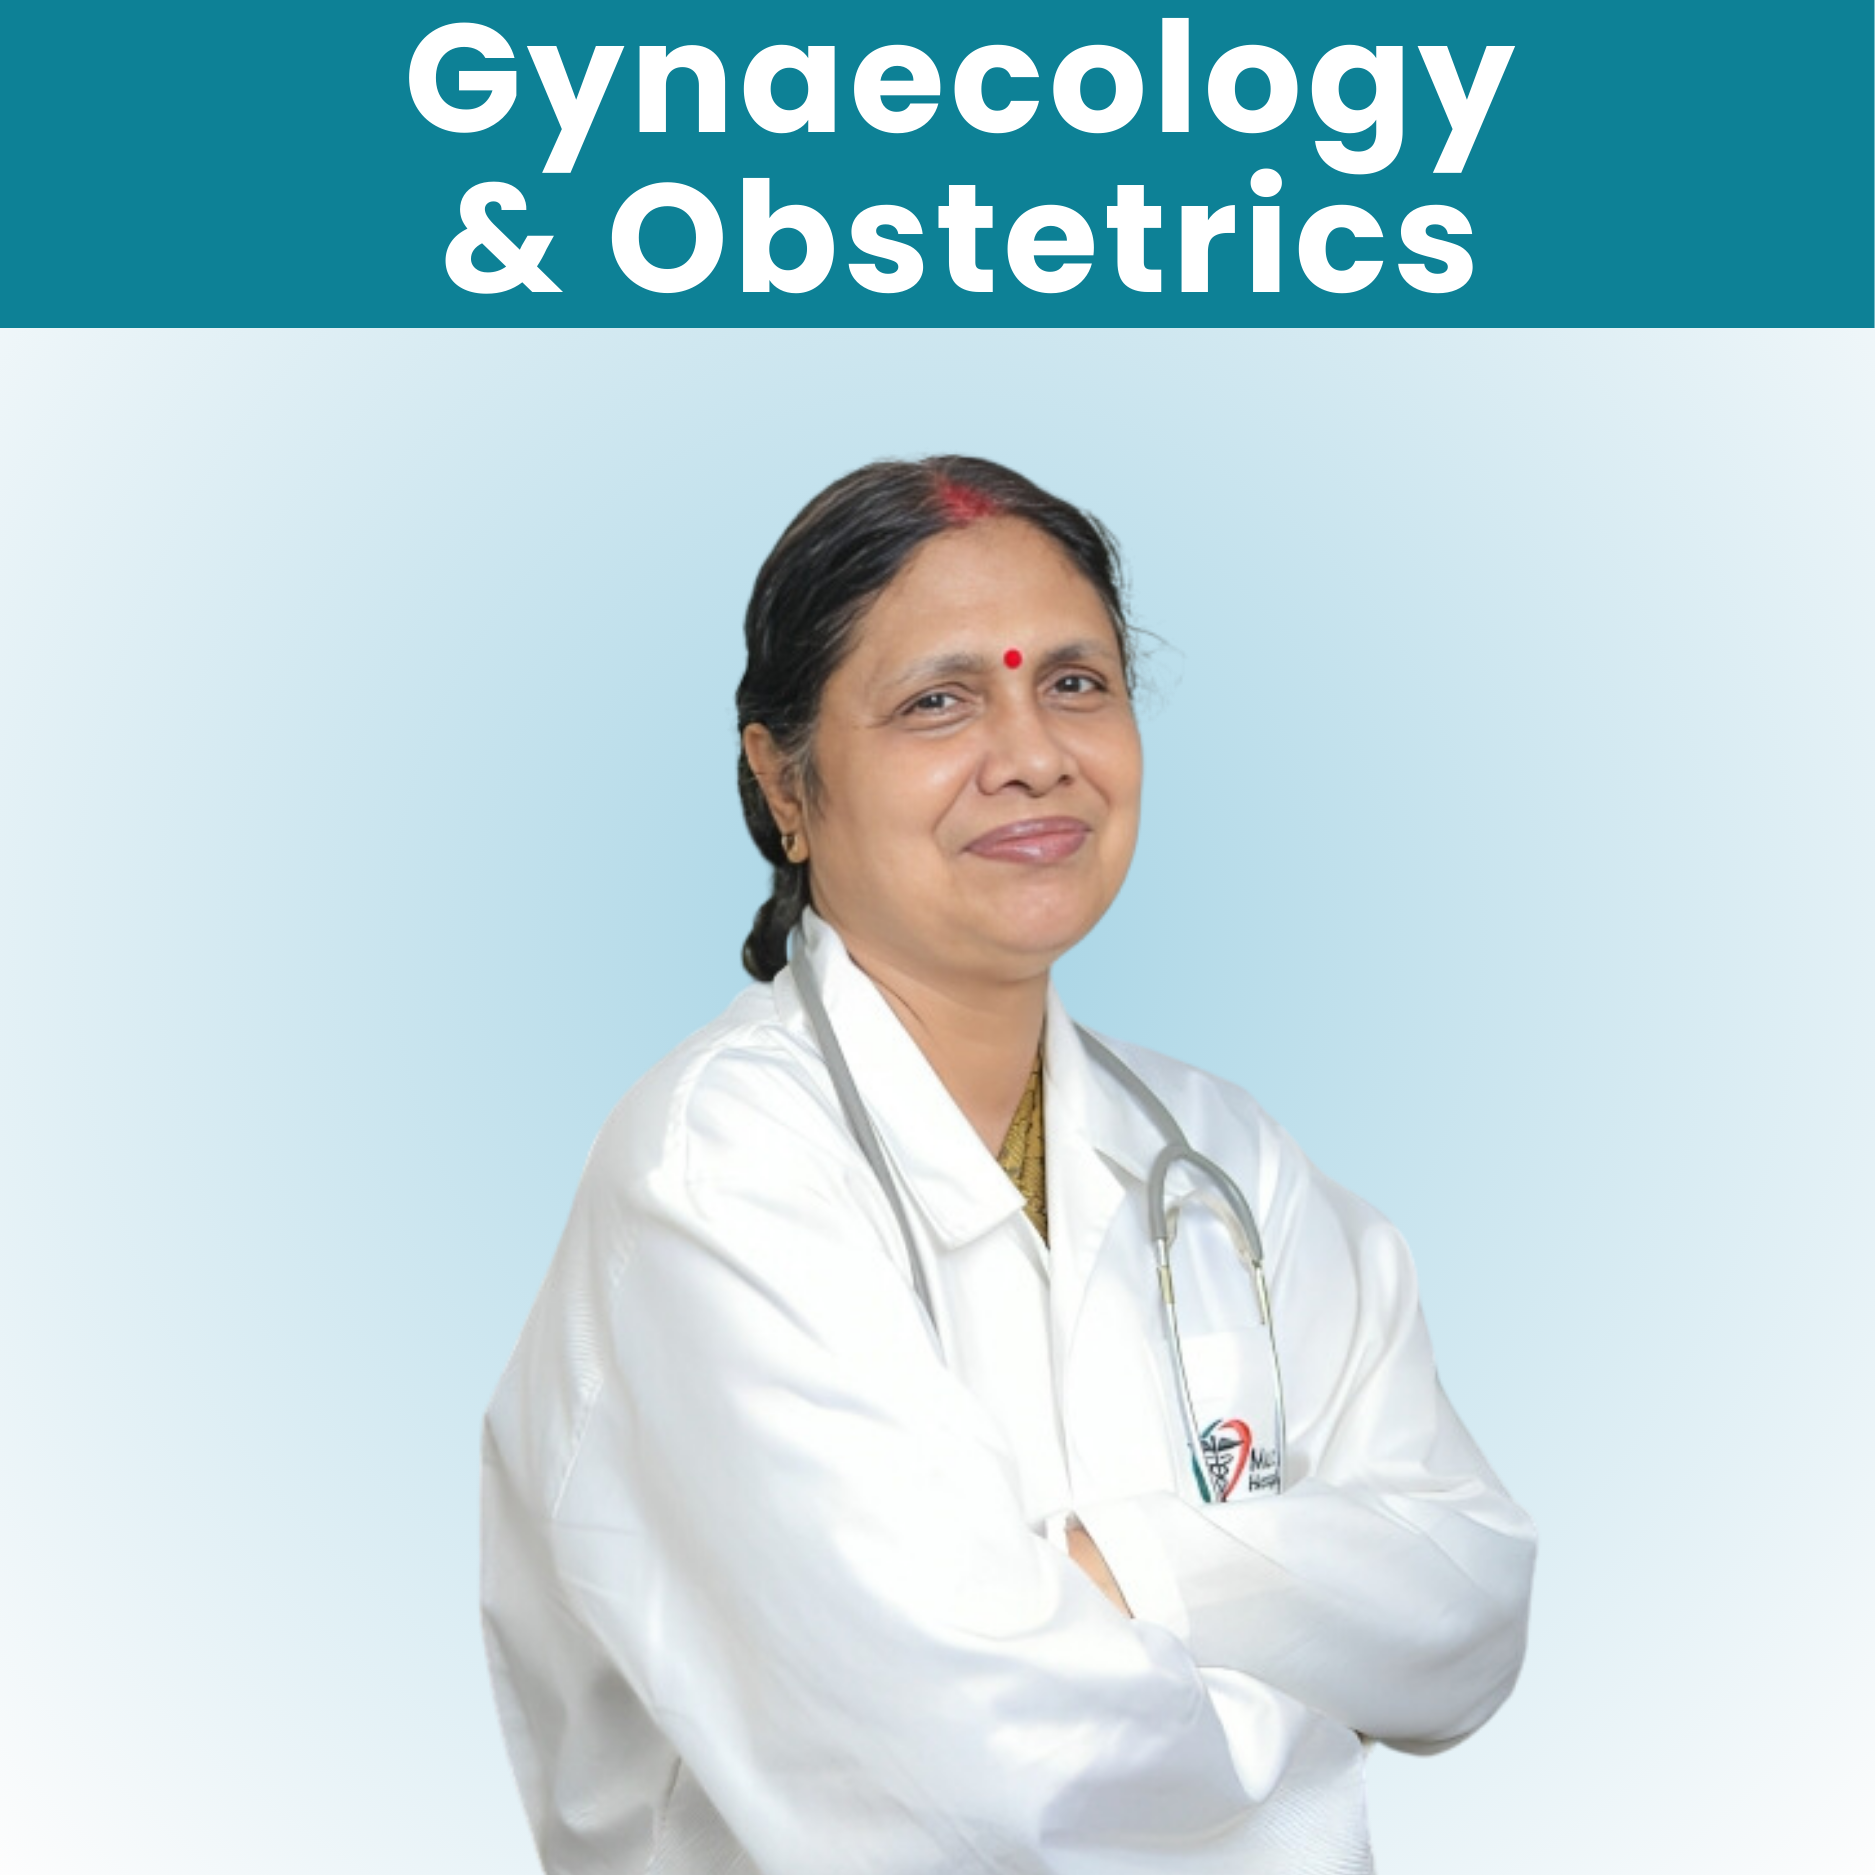 Dr. Seema Bhattachatjee